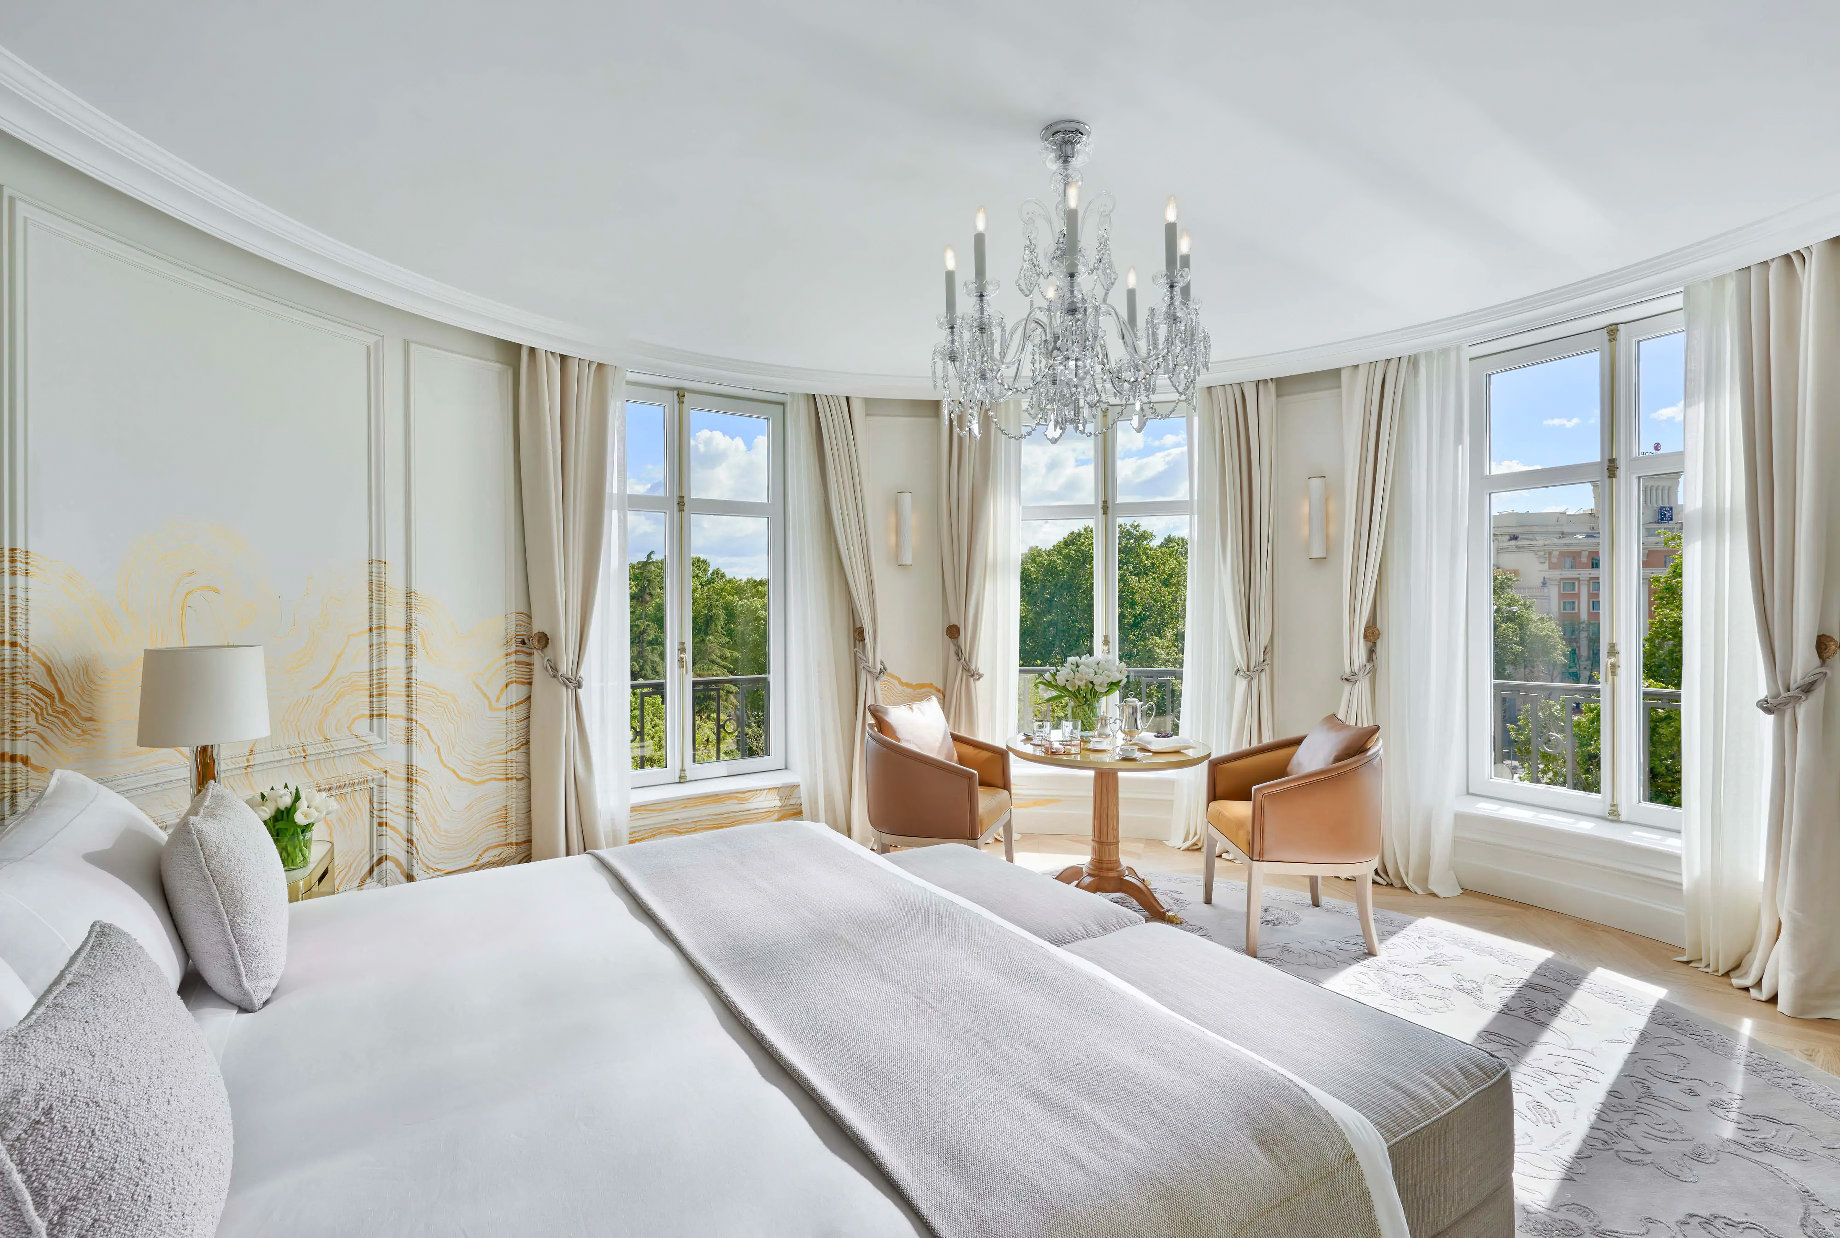 Mandarin Oriental Ritz, Madrid Hotel – Madrid, Spain – Presidential Suite Bedroom